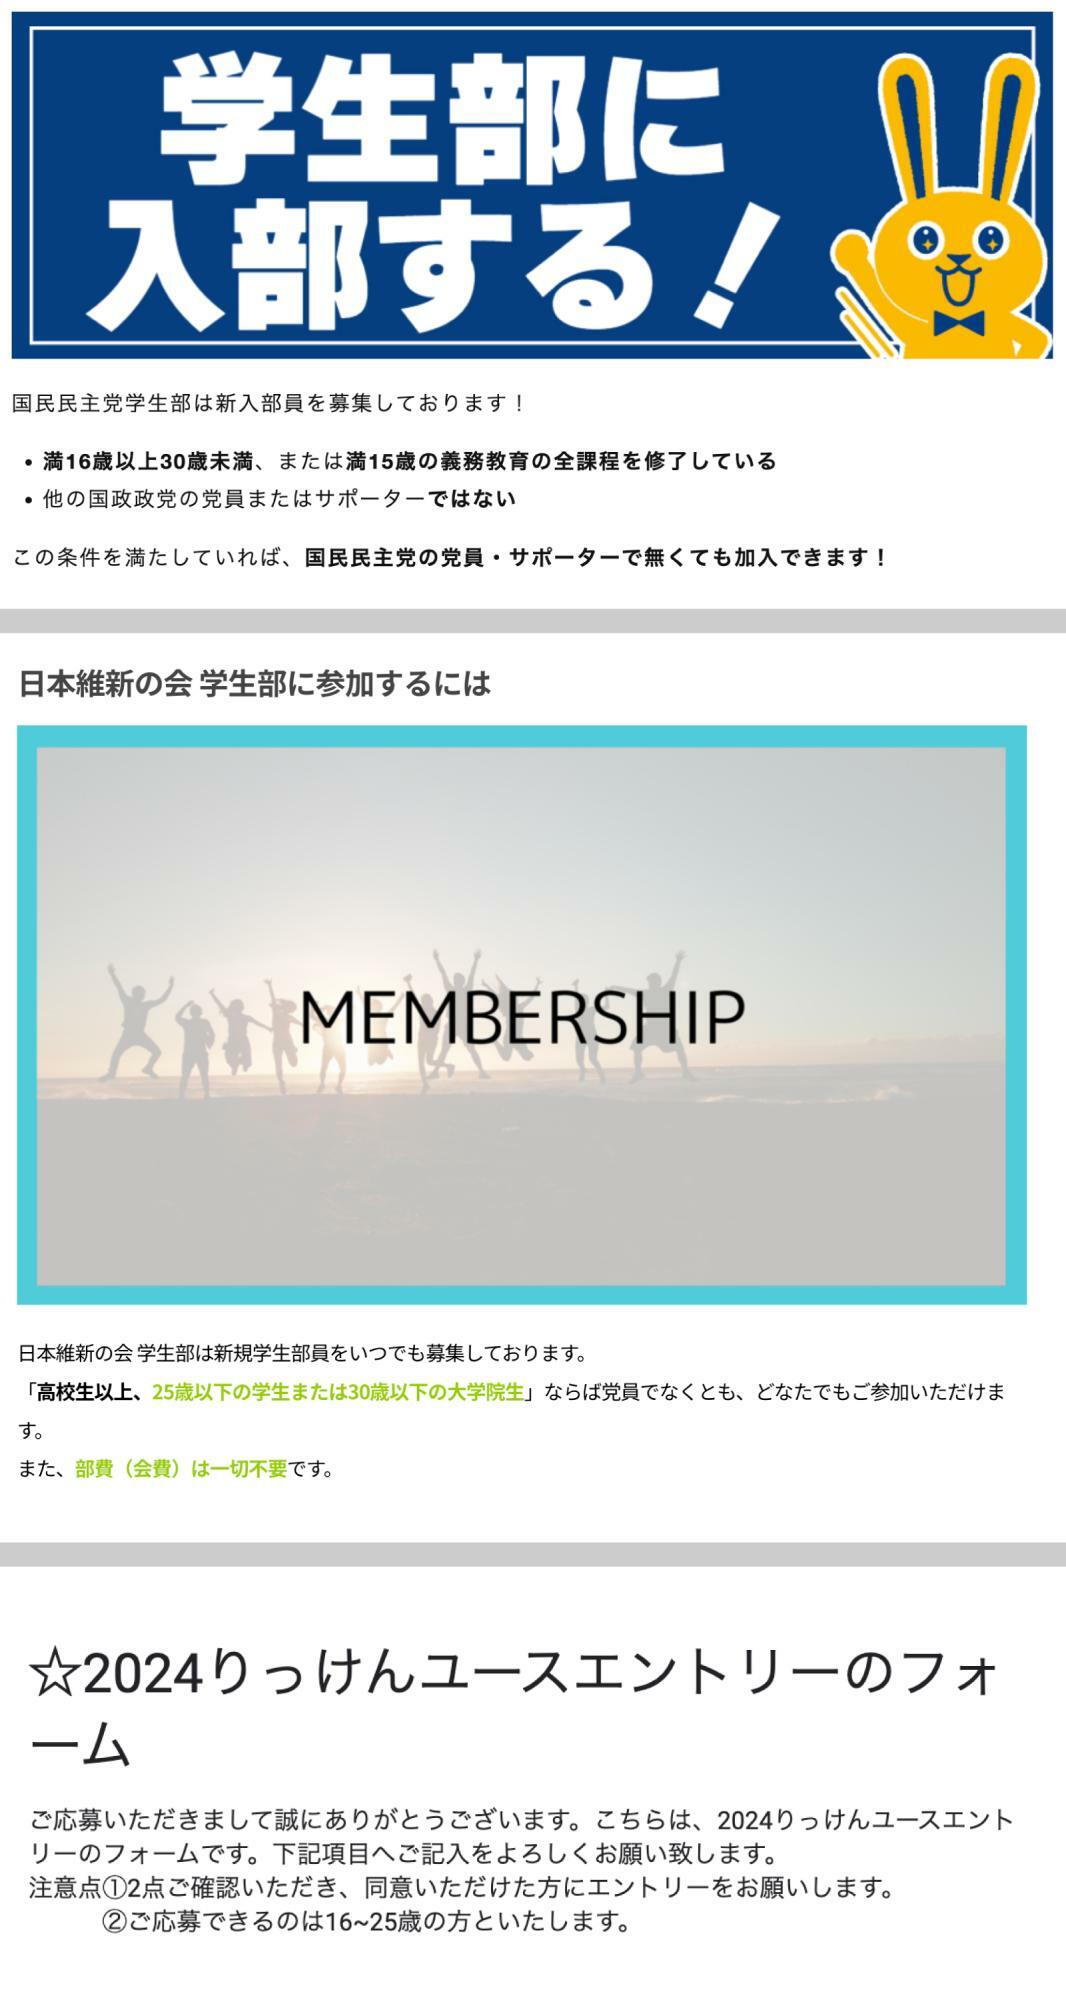 国民民主党、日本維新の会、立憲民主党の学生部（ユース）ホームページに記載されている年齢の条件